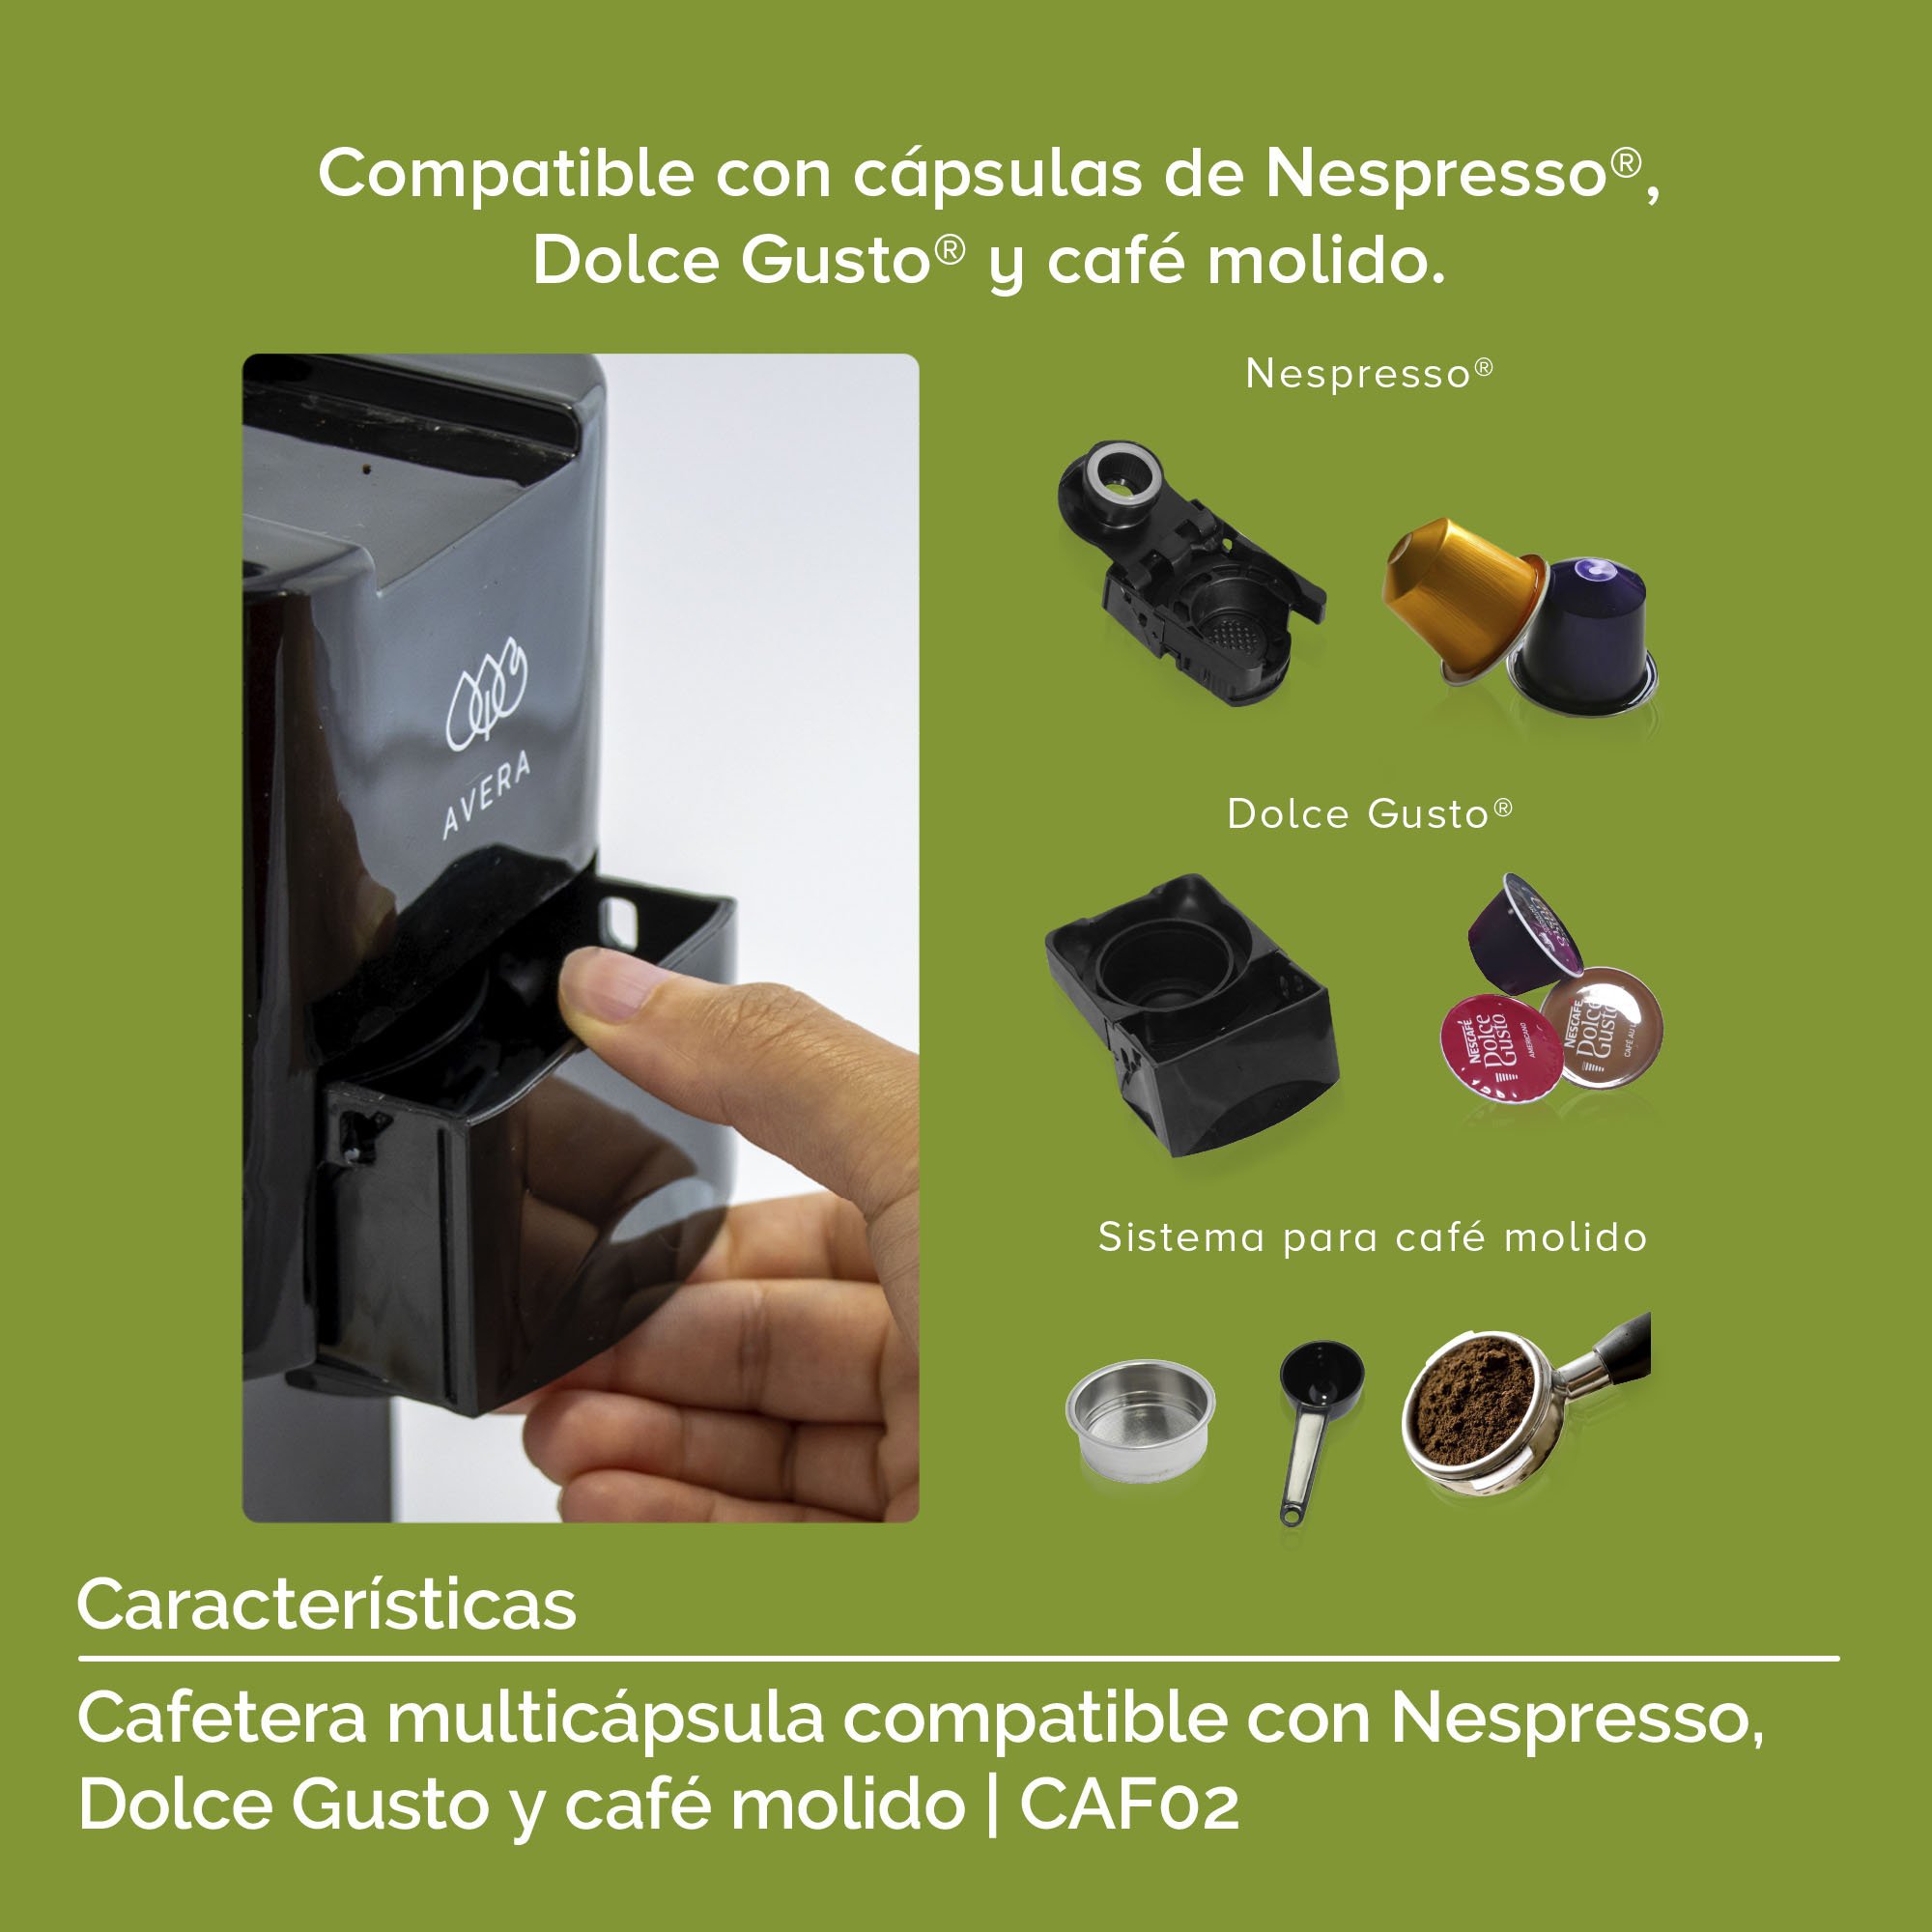 Porta Capsulas Dolce Gusto, Compatible con Capsulas Nespresso